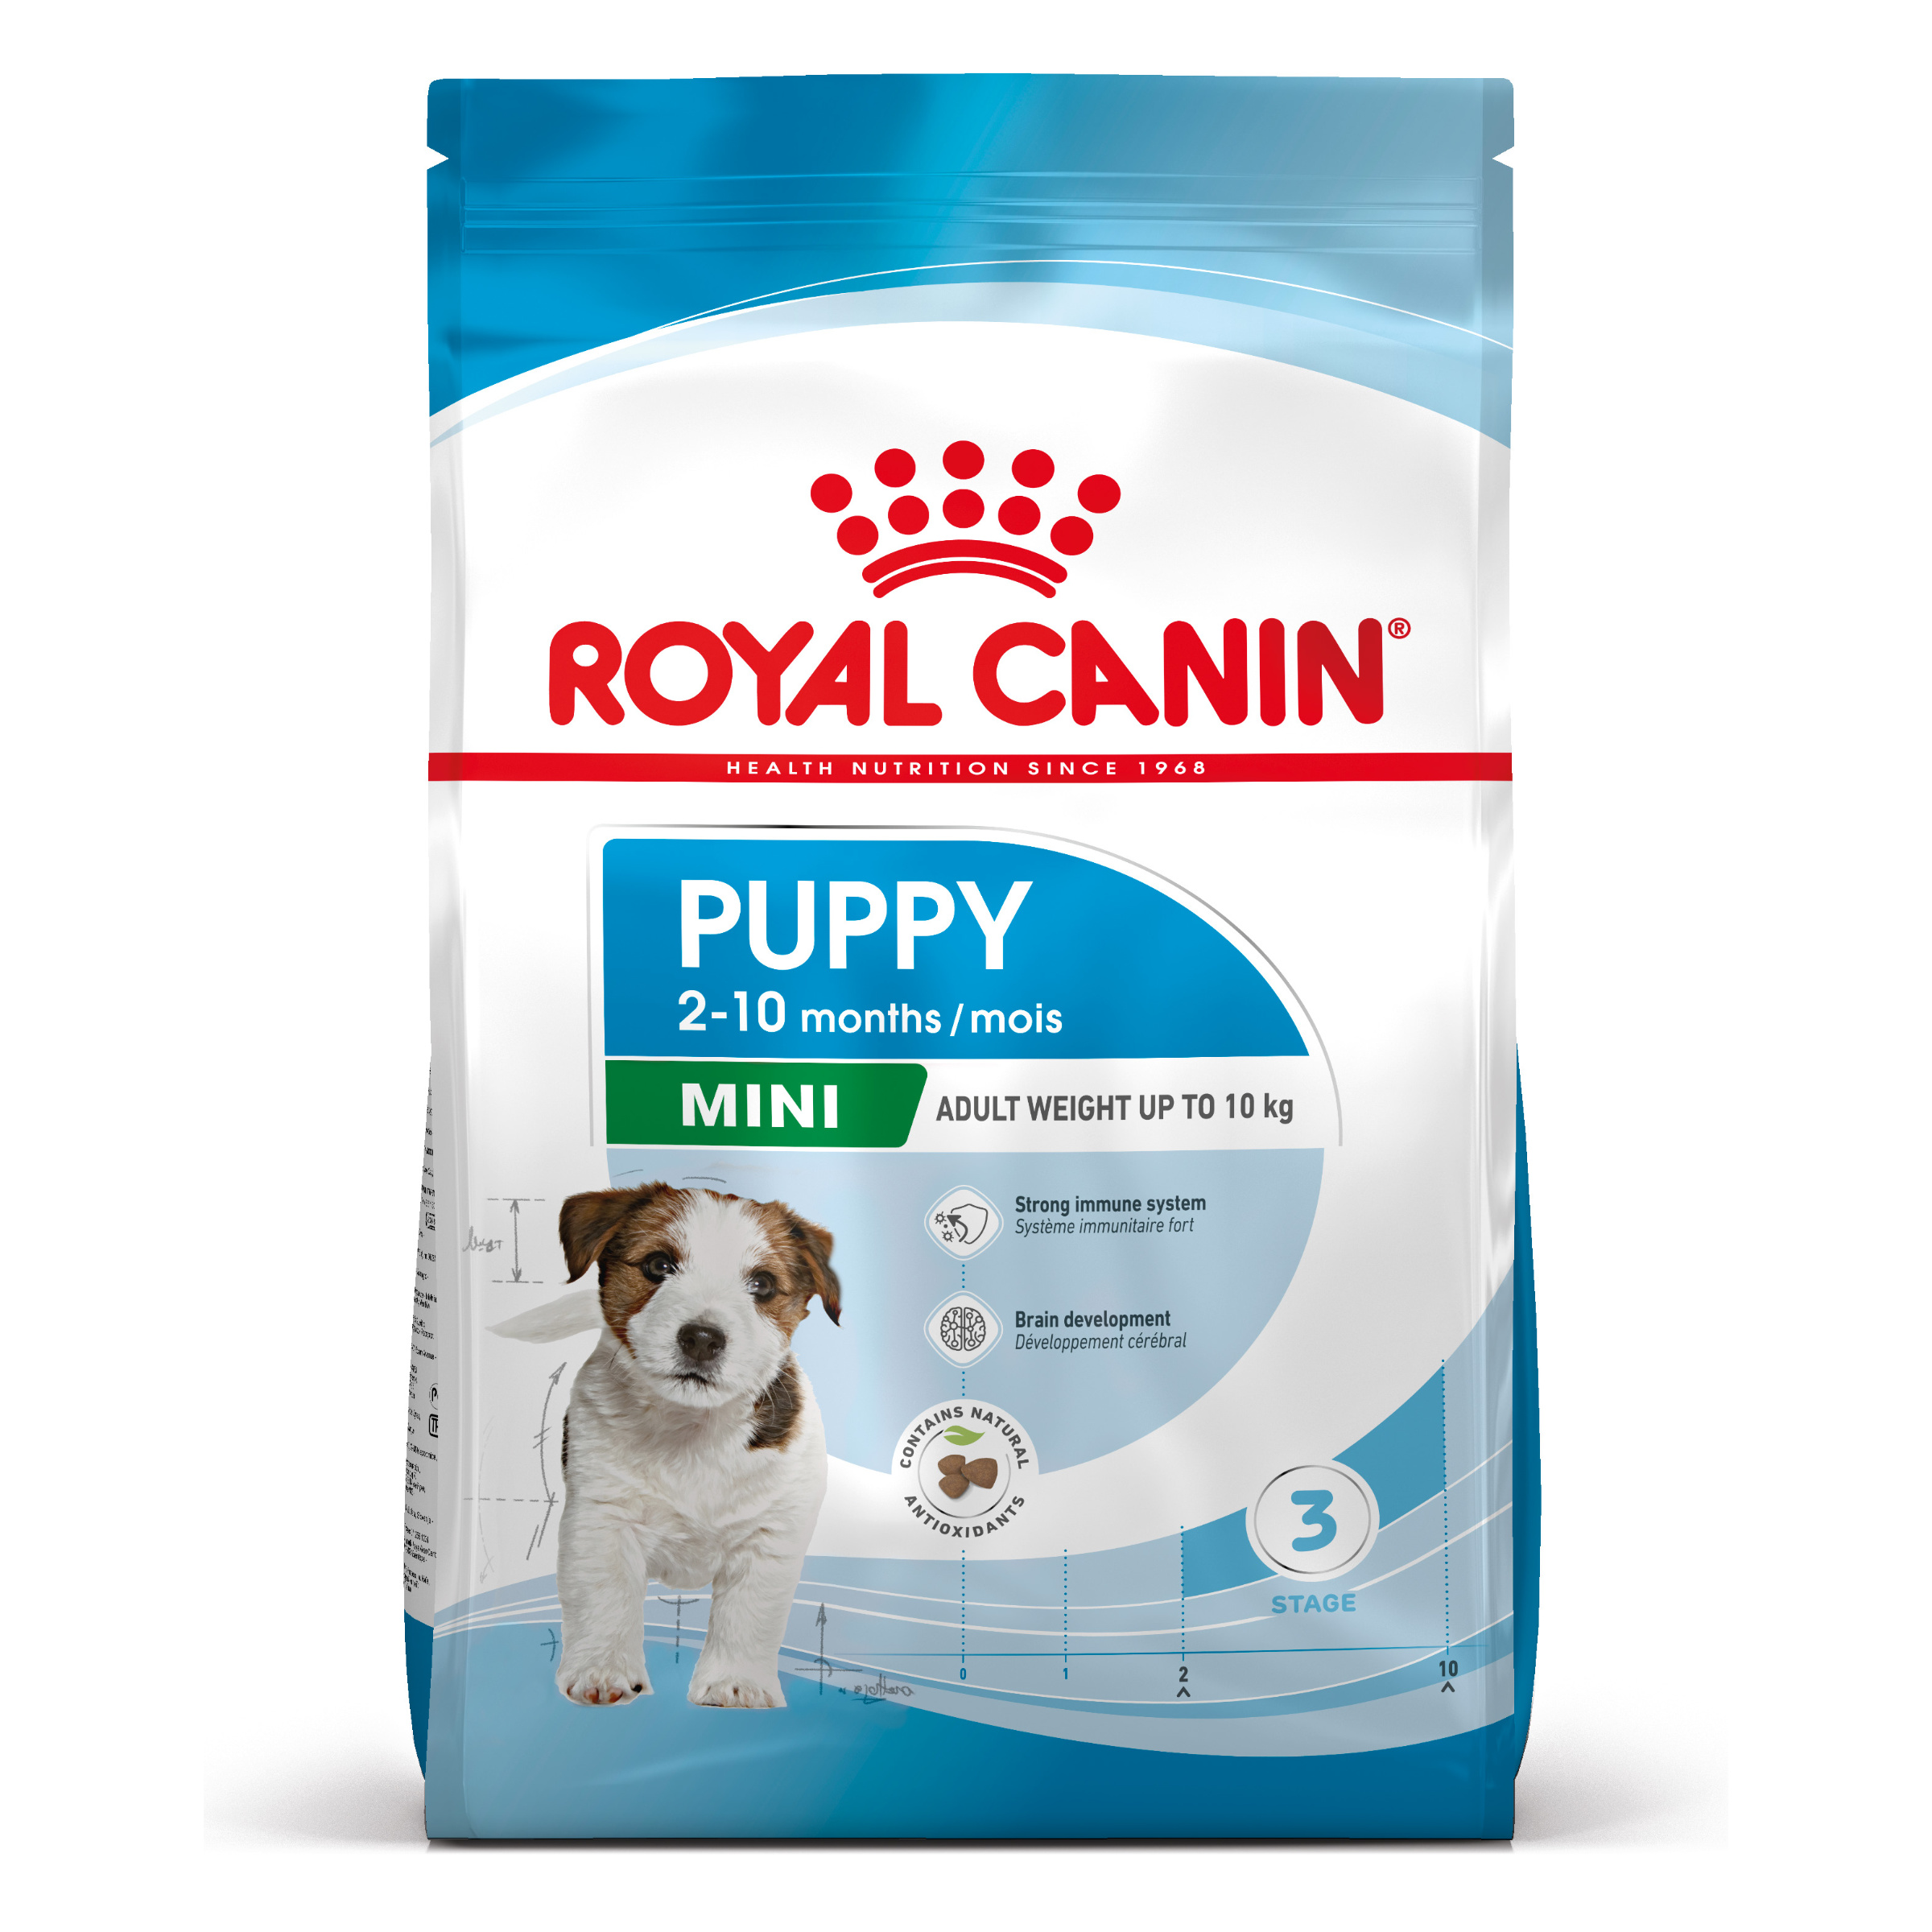 Royal Canin Mini Puppy - Hondenvoer voor pups van kleine rassen (gewicht 1 tot 10kg) tot 10 maanden - 4kg